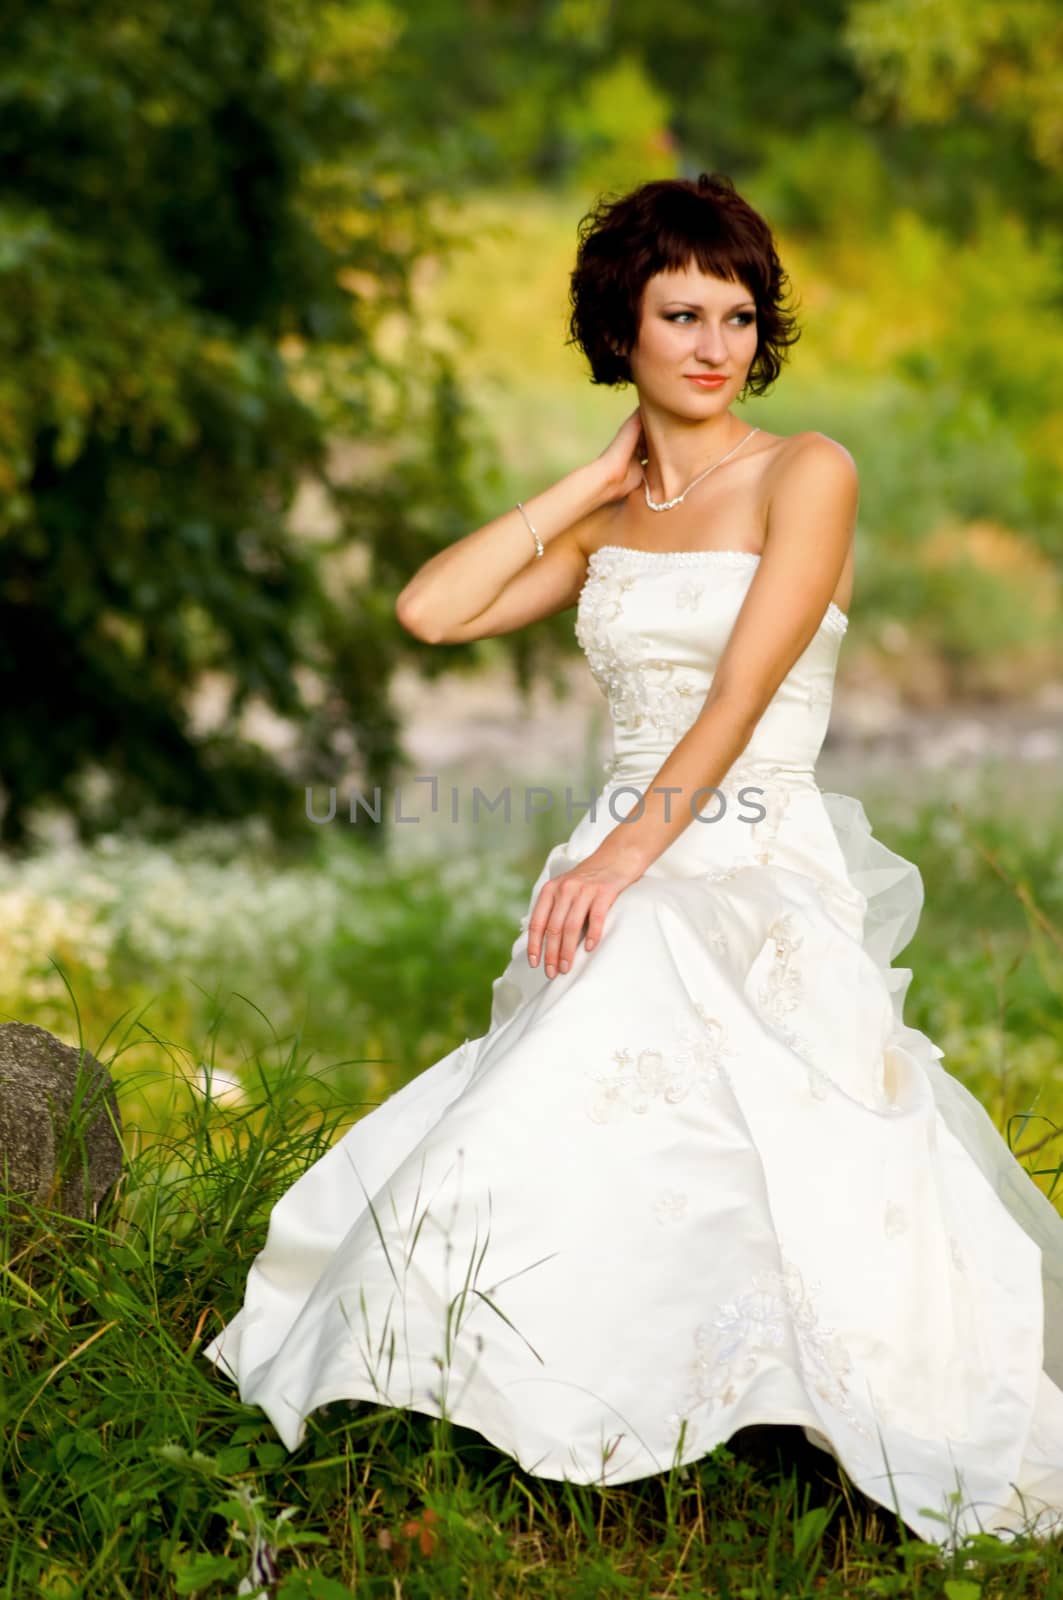 Pretty girl in a wedding dress